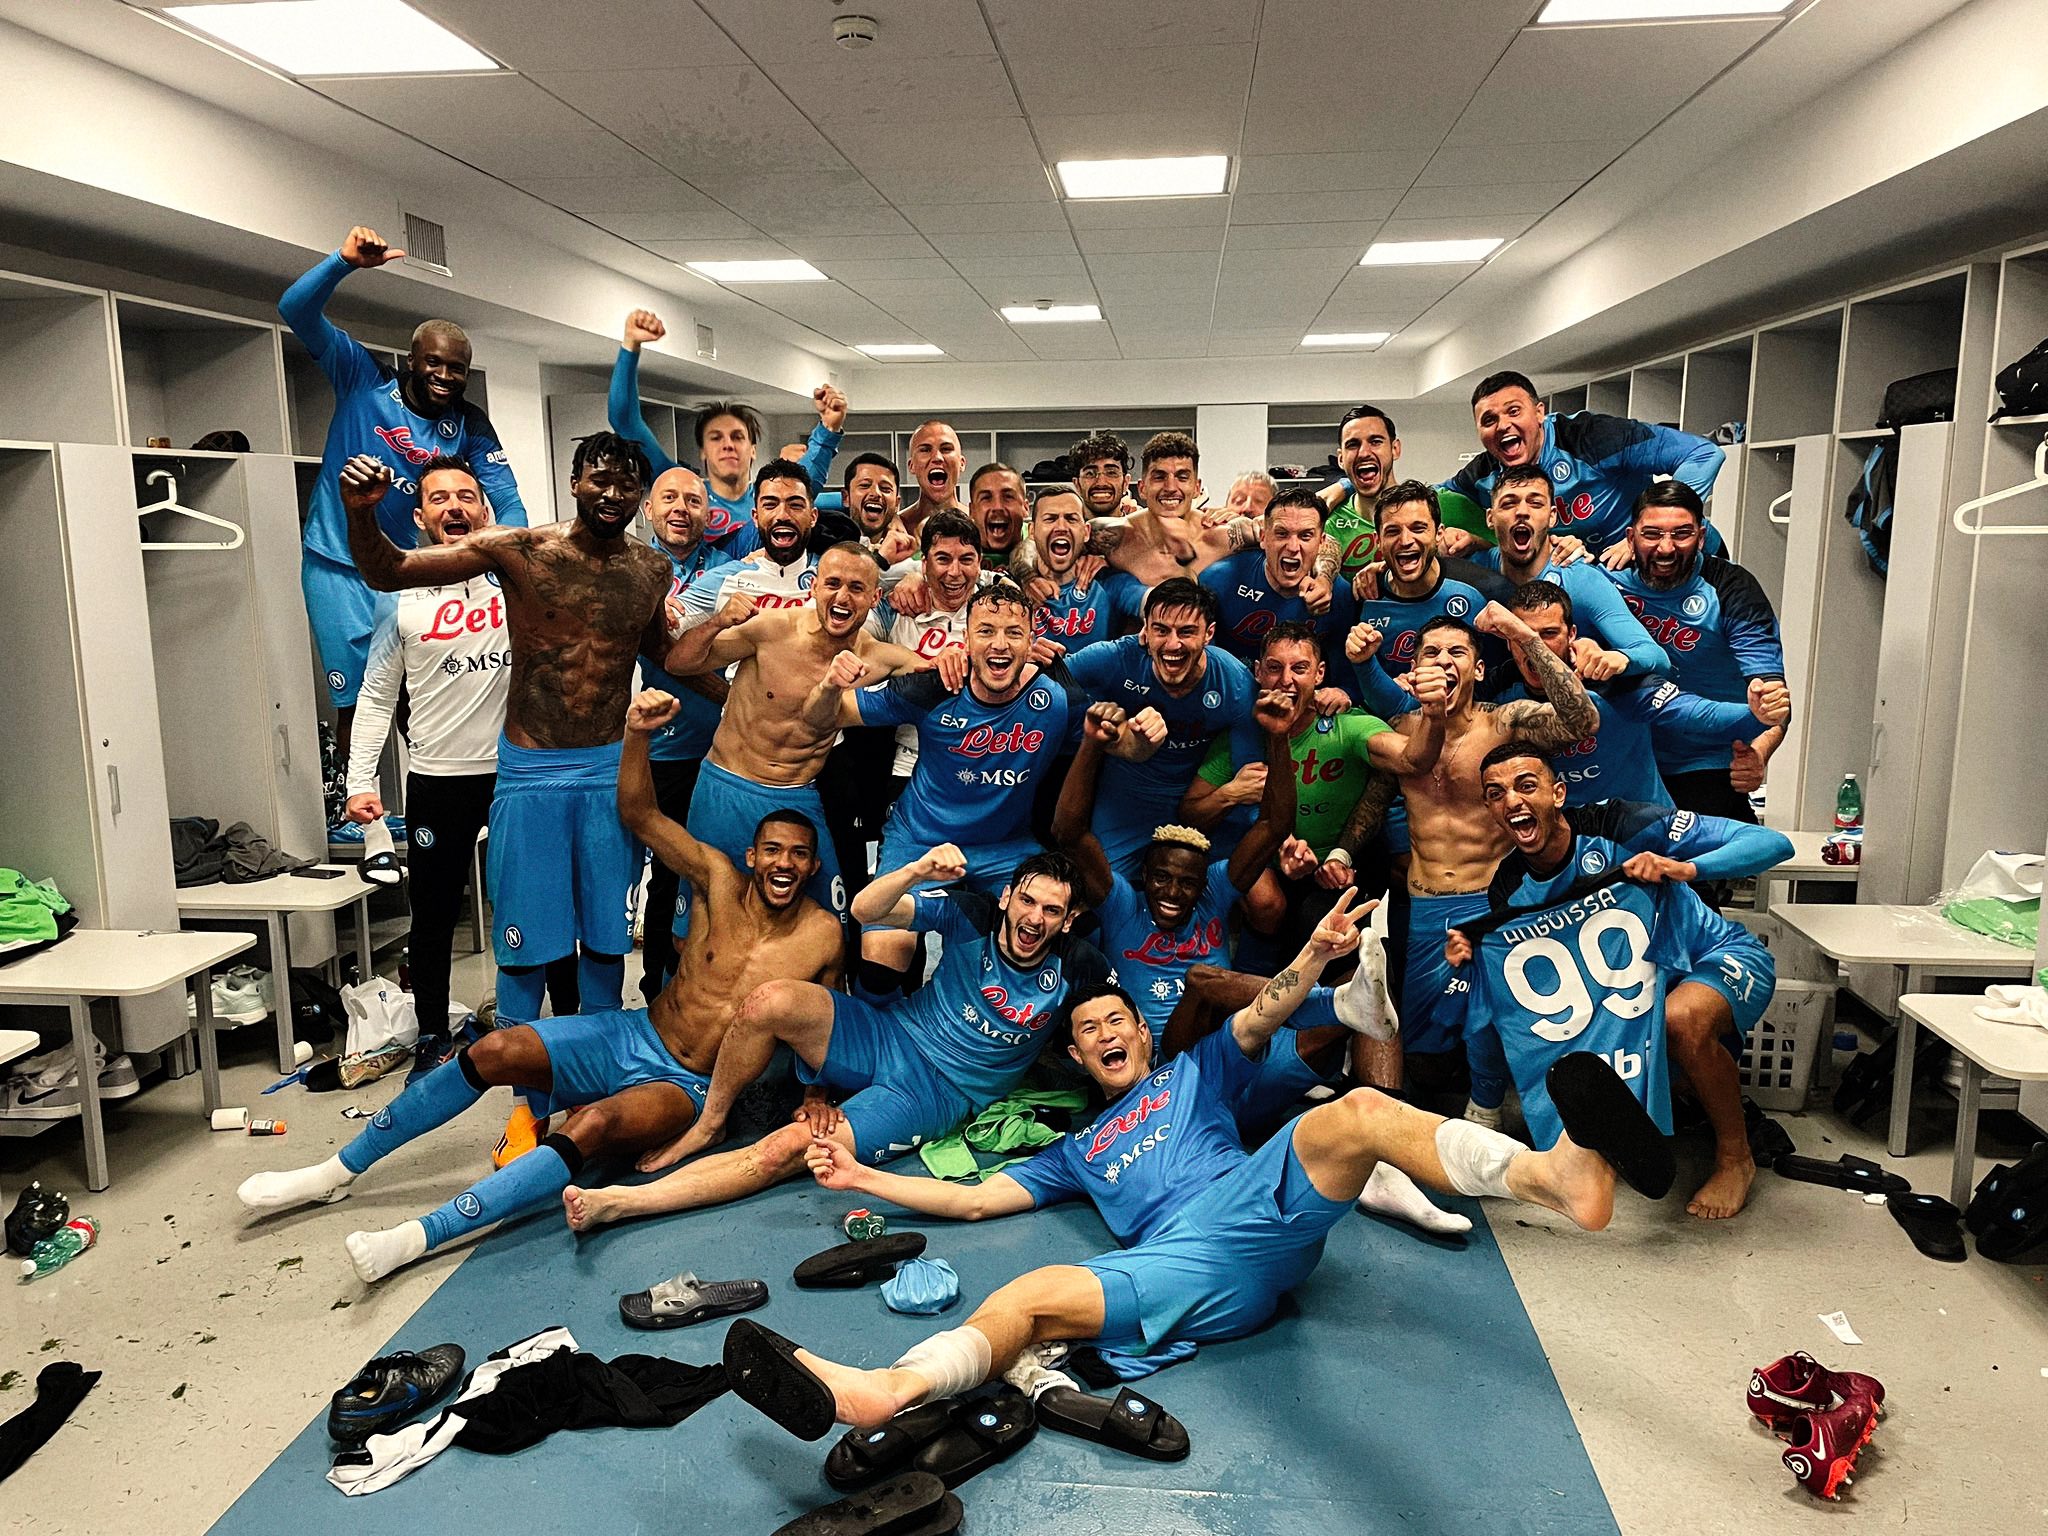 Napolitanci su znali da proslave trijumf nad Juventusom i u svlačionici, FOTO: SSC Napoli/Twitter